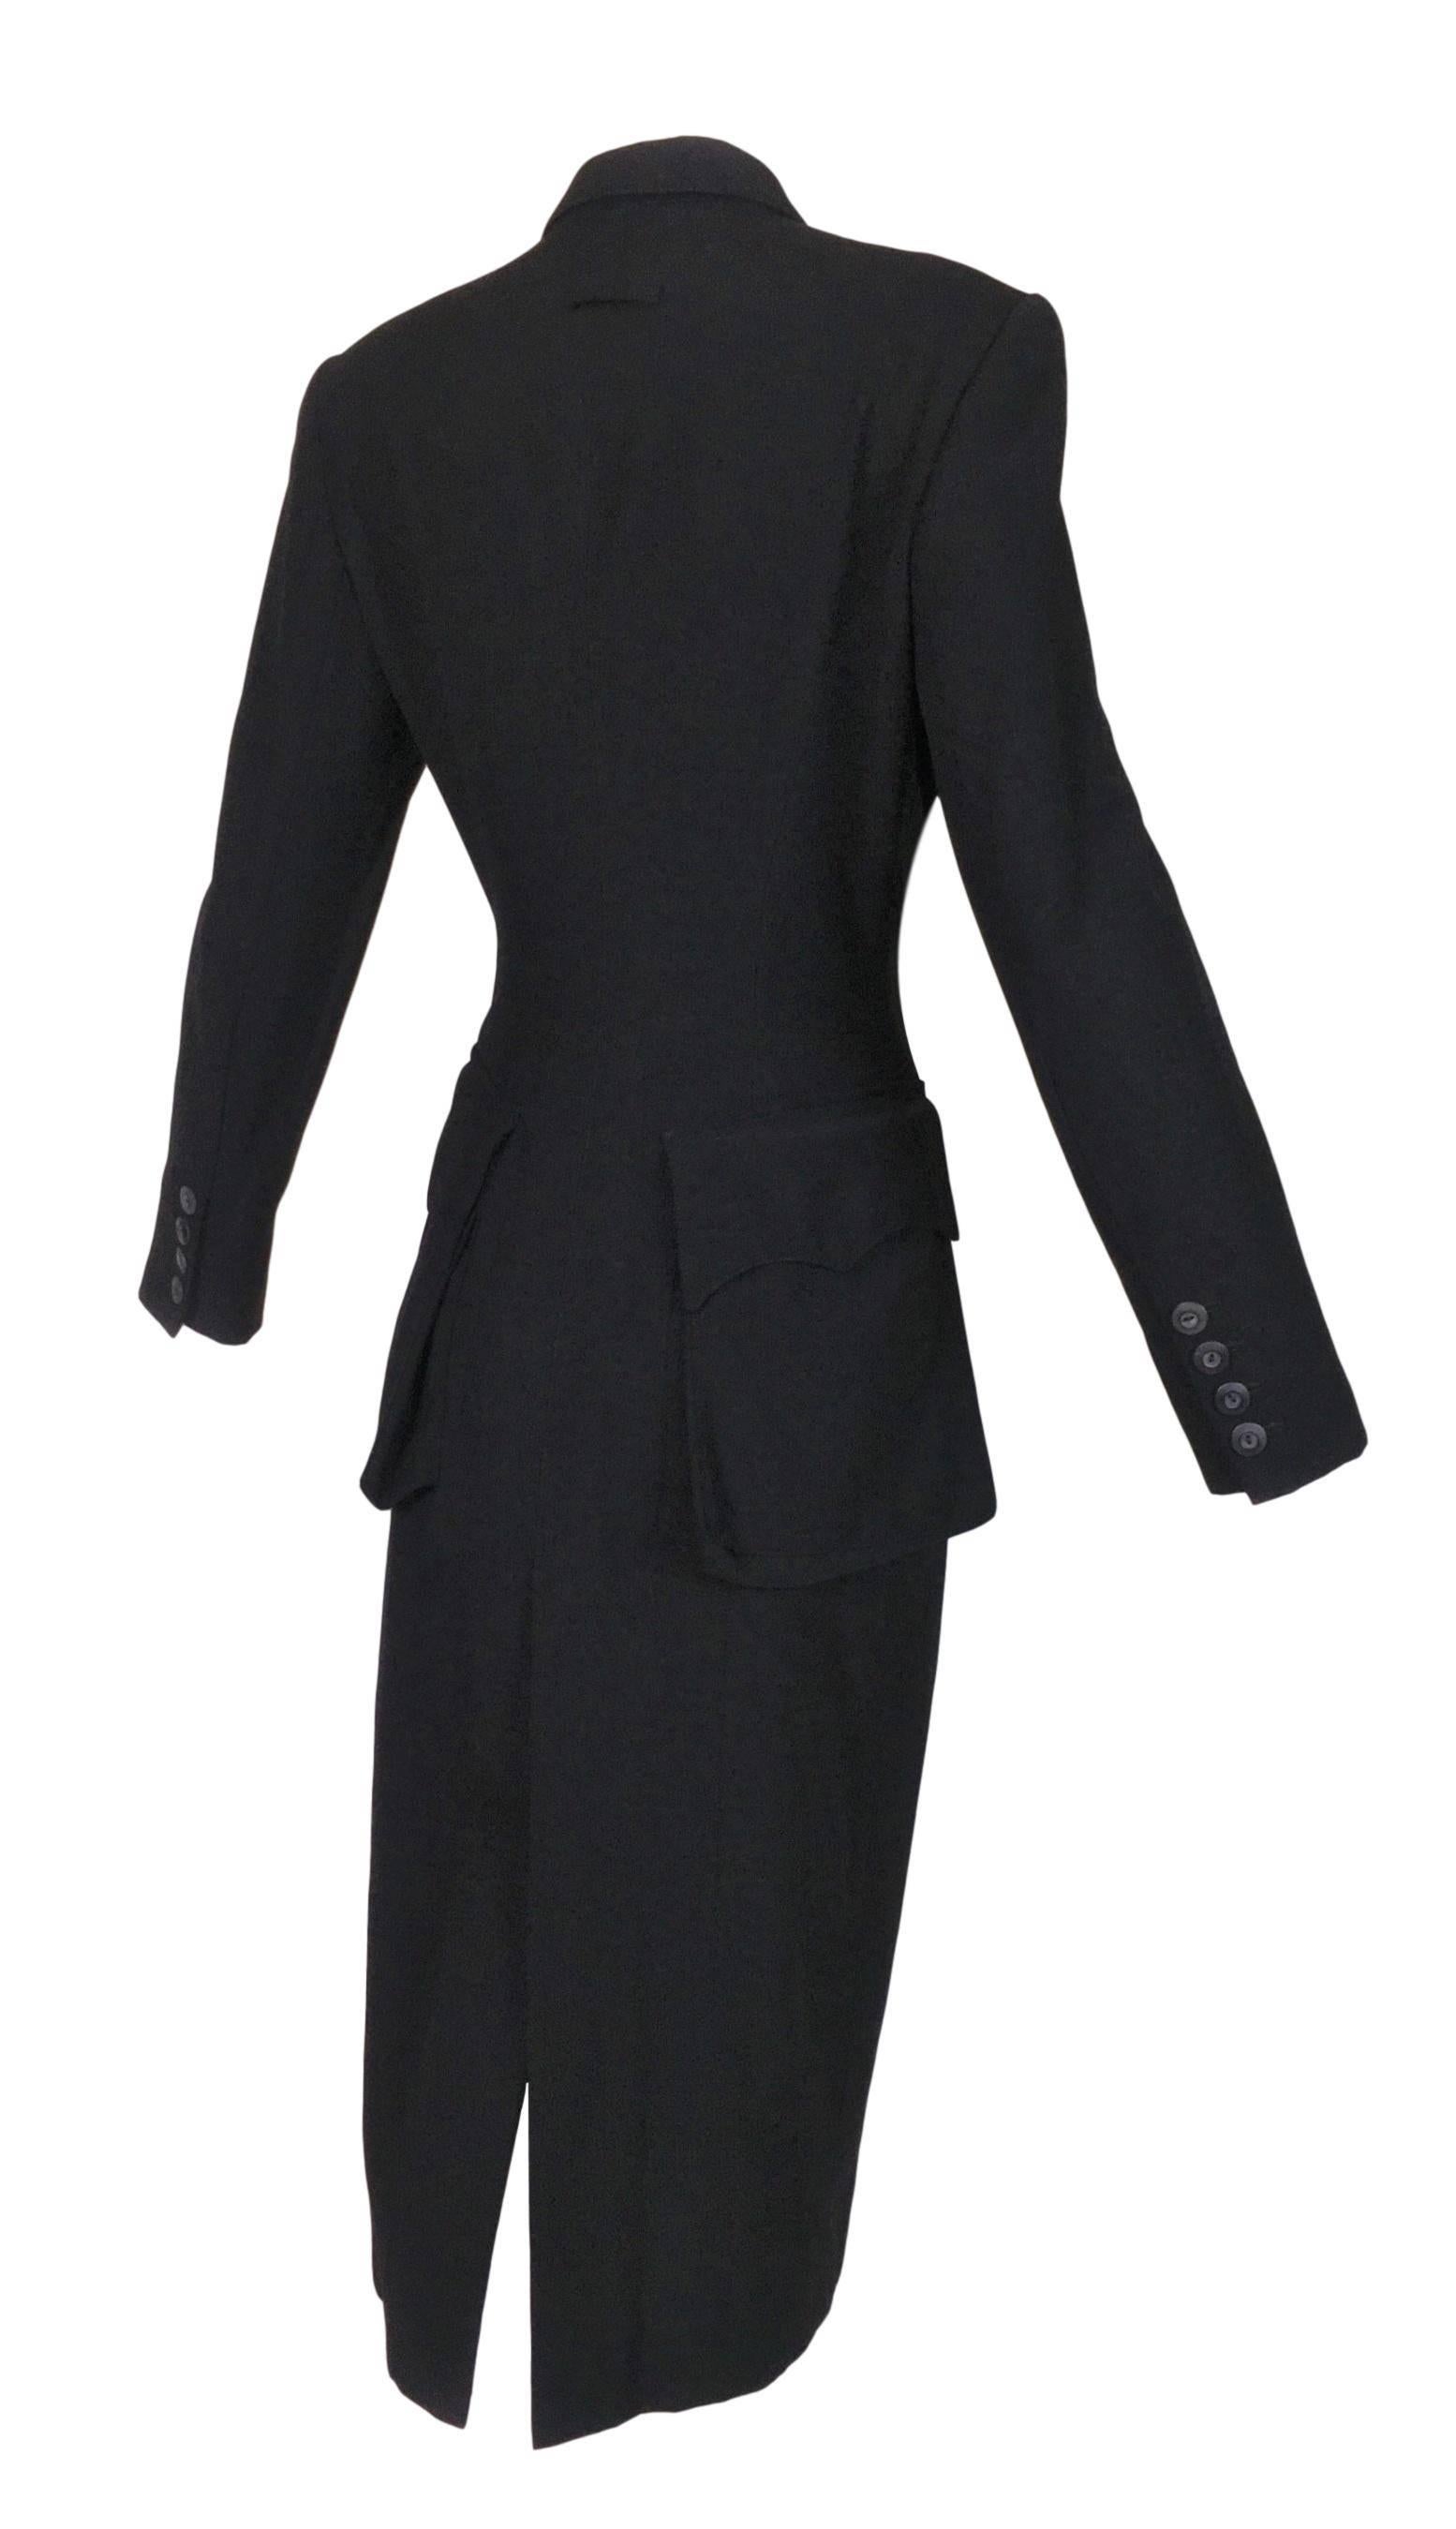 Women's F/W 1992 Jean Paul Gaultier Black Coat Dress Jacket w/ Large Butt Pockets